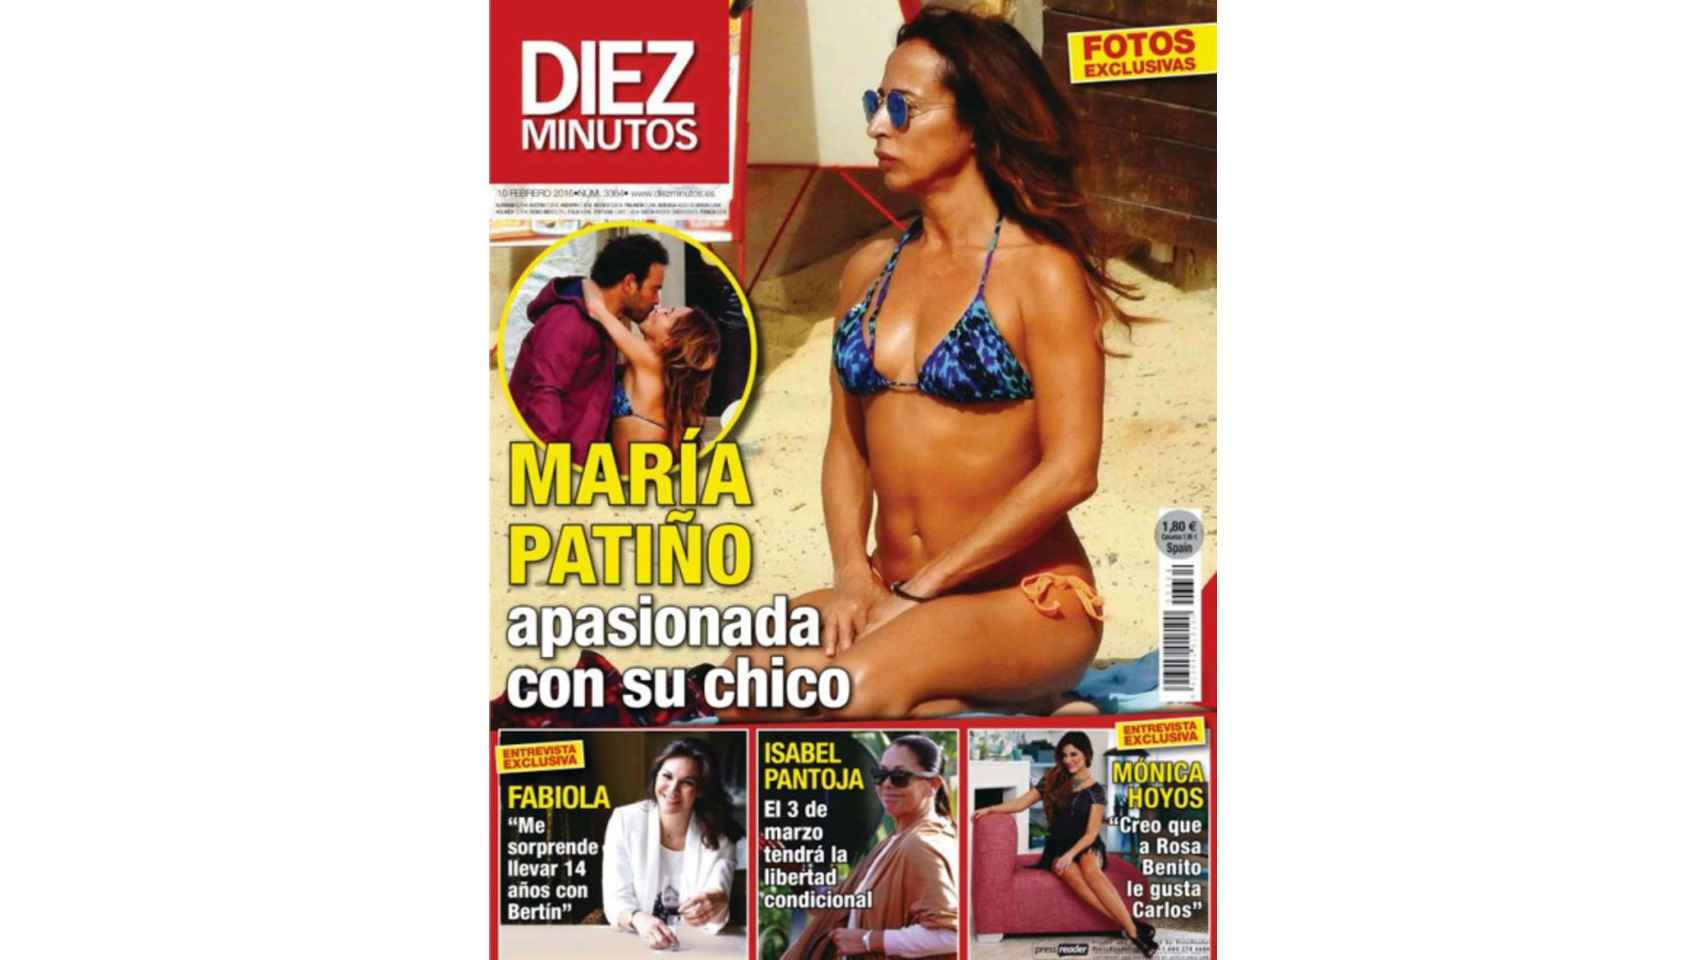 María Patiño en la portada de Diez Minutos en bikini.